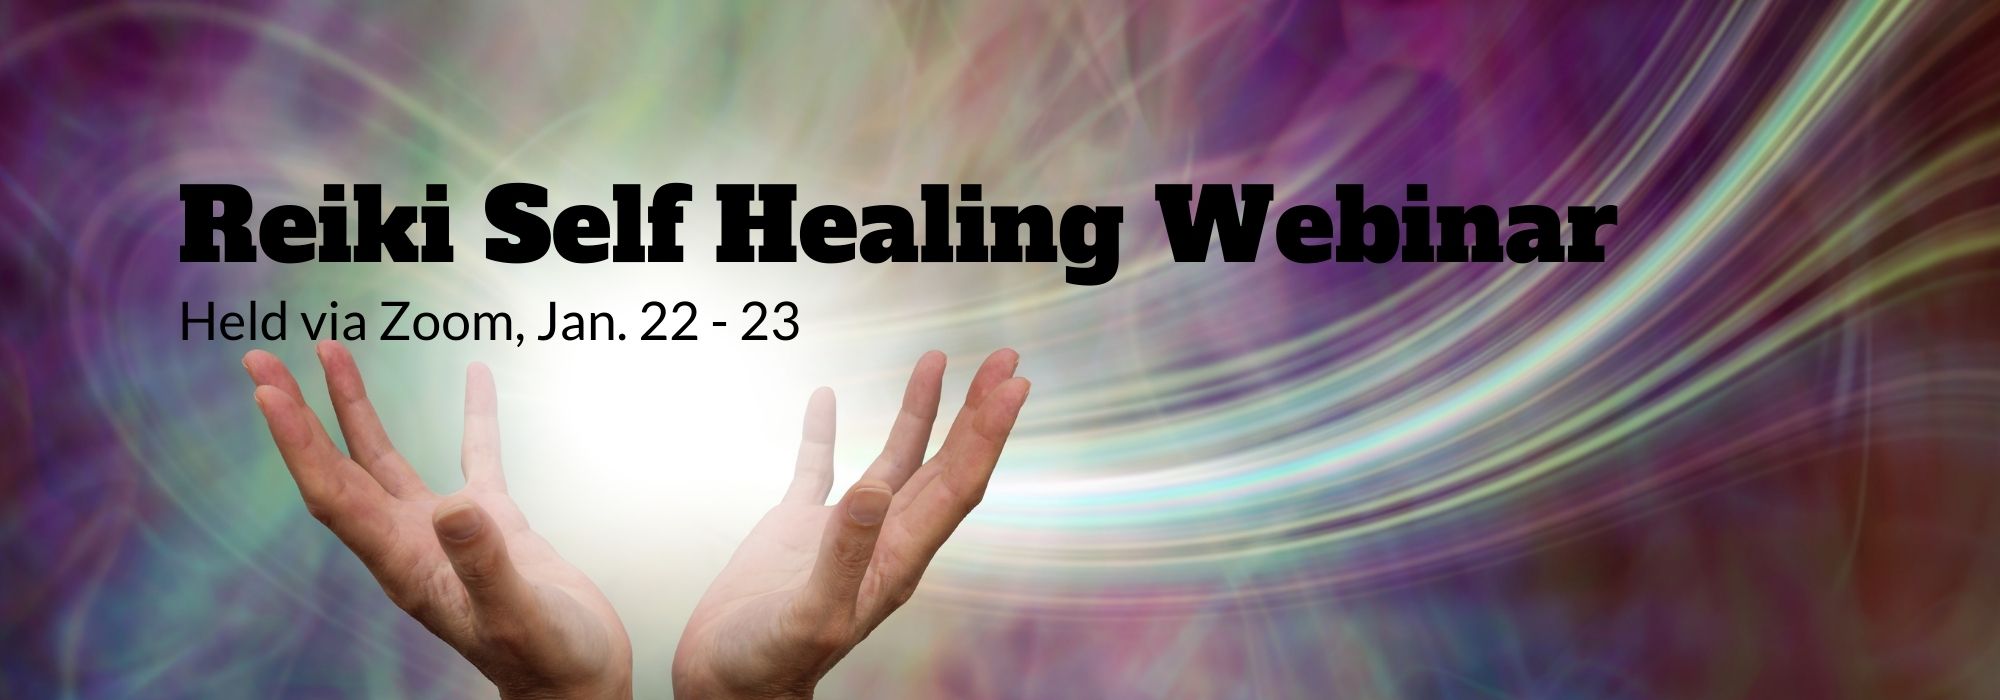 Reiki Self Healing Webinar, Held Via Zoom, Jan 22-23